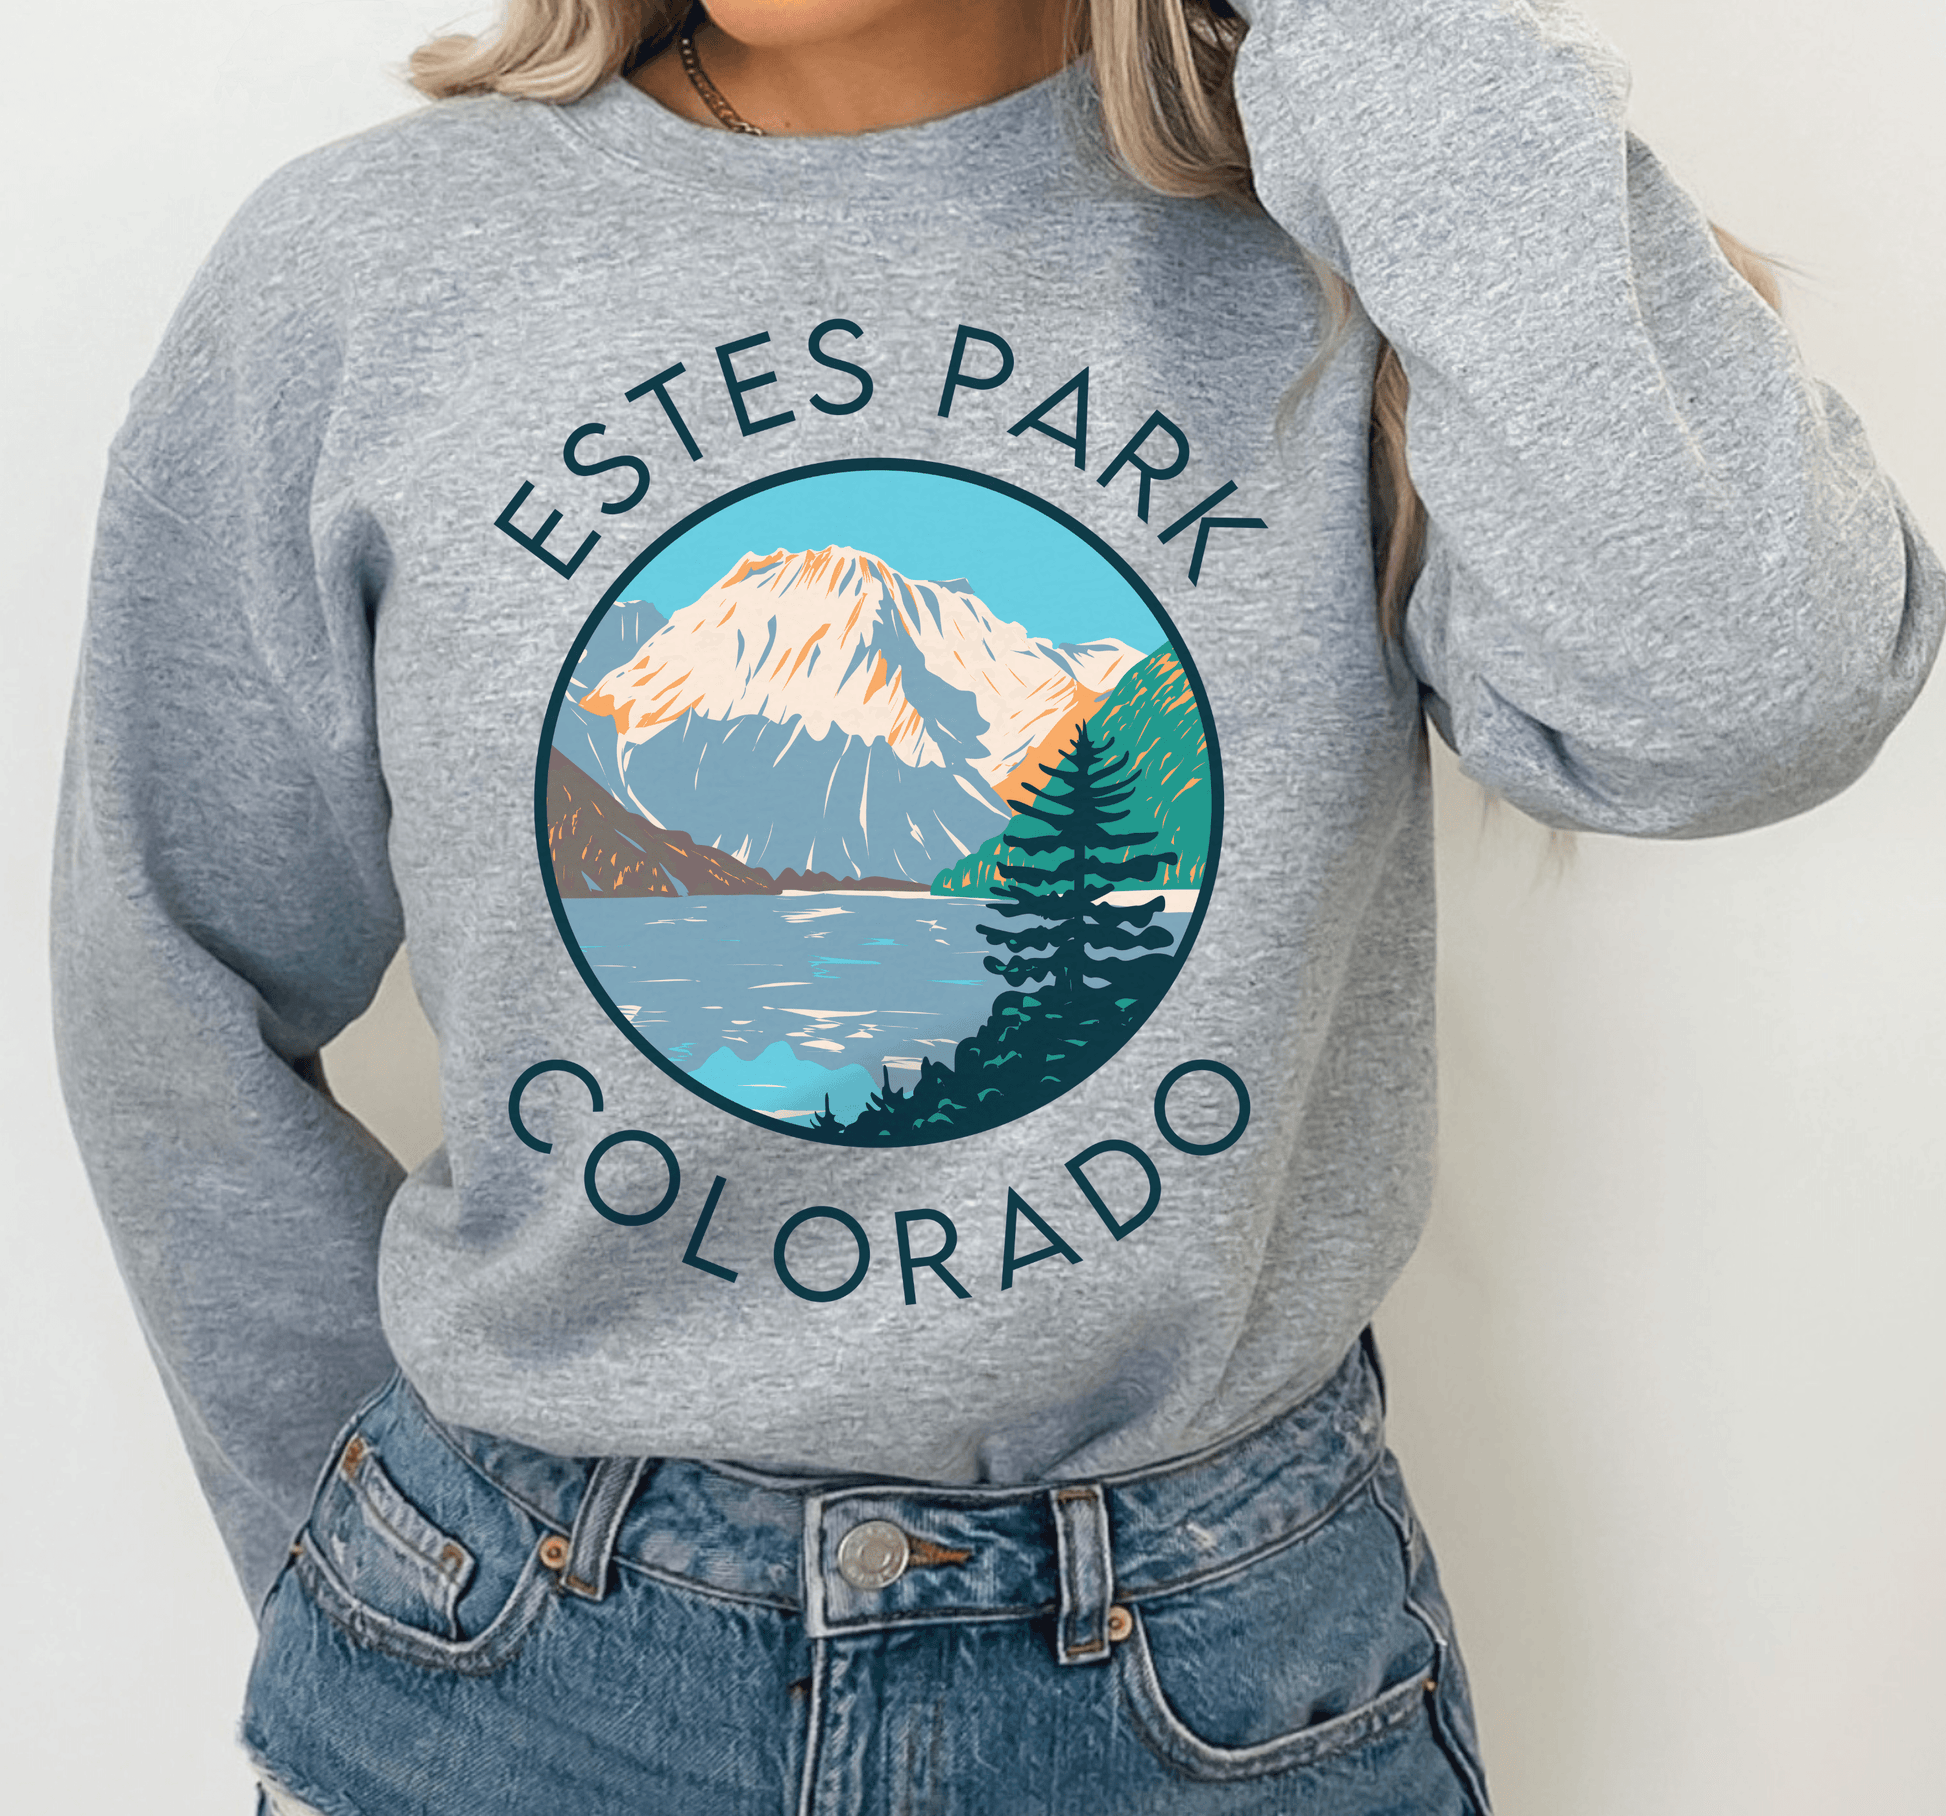 Estes Park Colorado Crewneck Sweatshirt - BentleyBlueCo